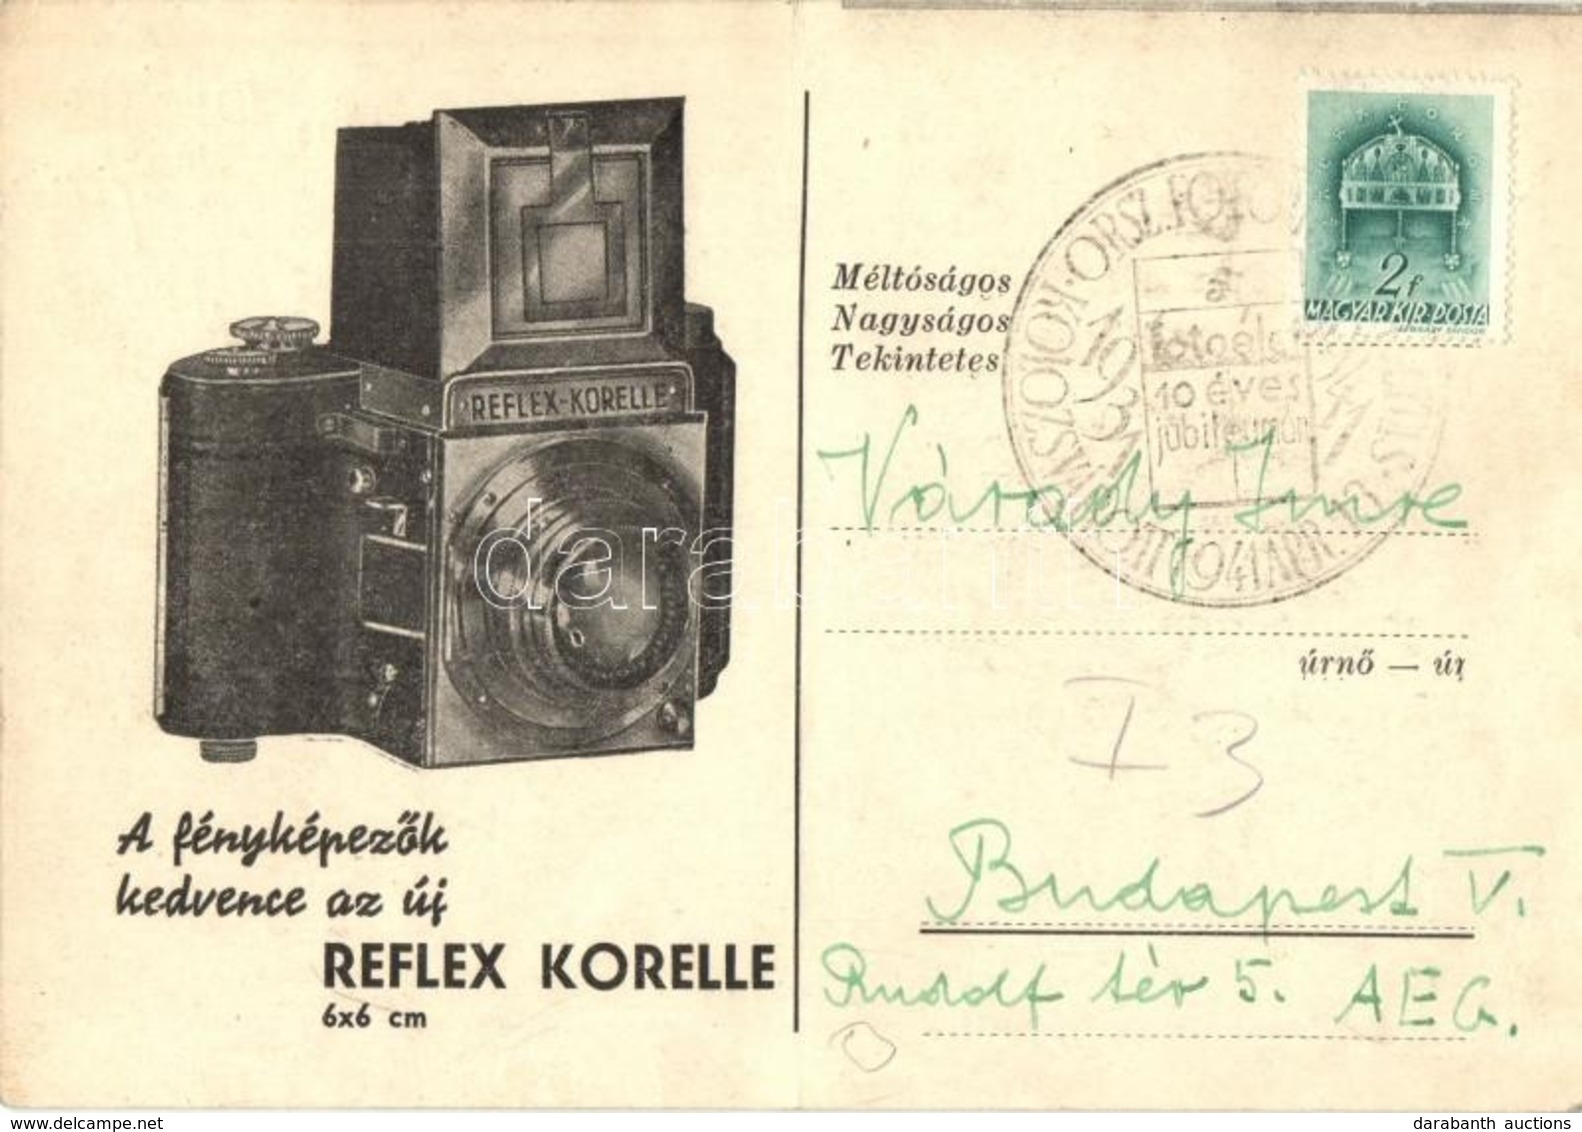 T2/T3 1941 Reflex Korelle 6x6 Cm Fényképezőgép Reklámlapja / Hungarian Photo Camera Advertisement Card + 1931-41 Országo - Non Classés